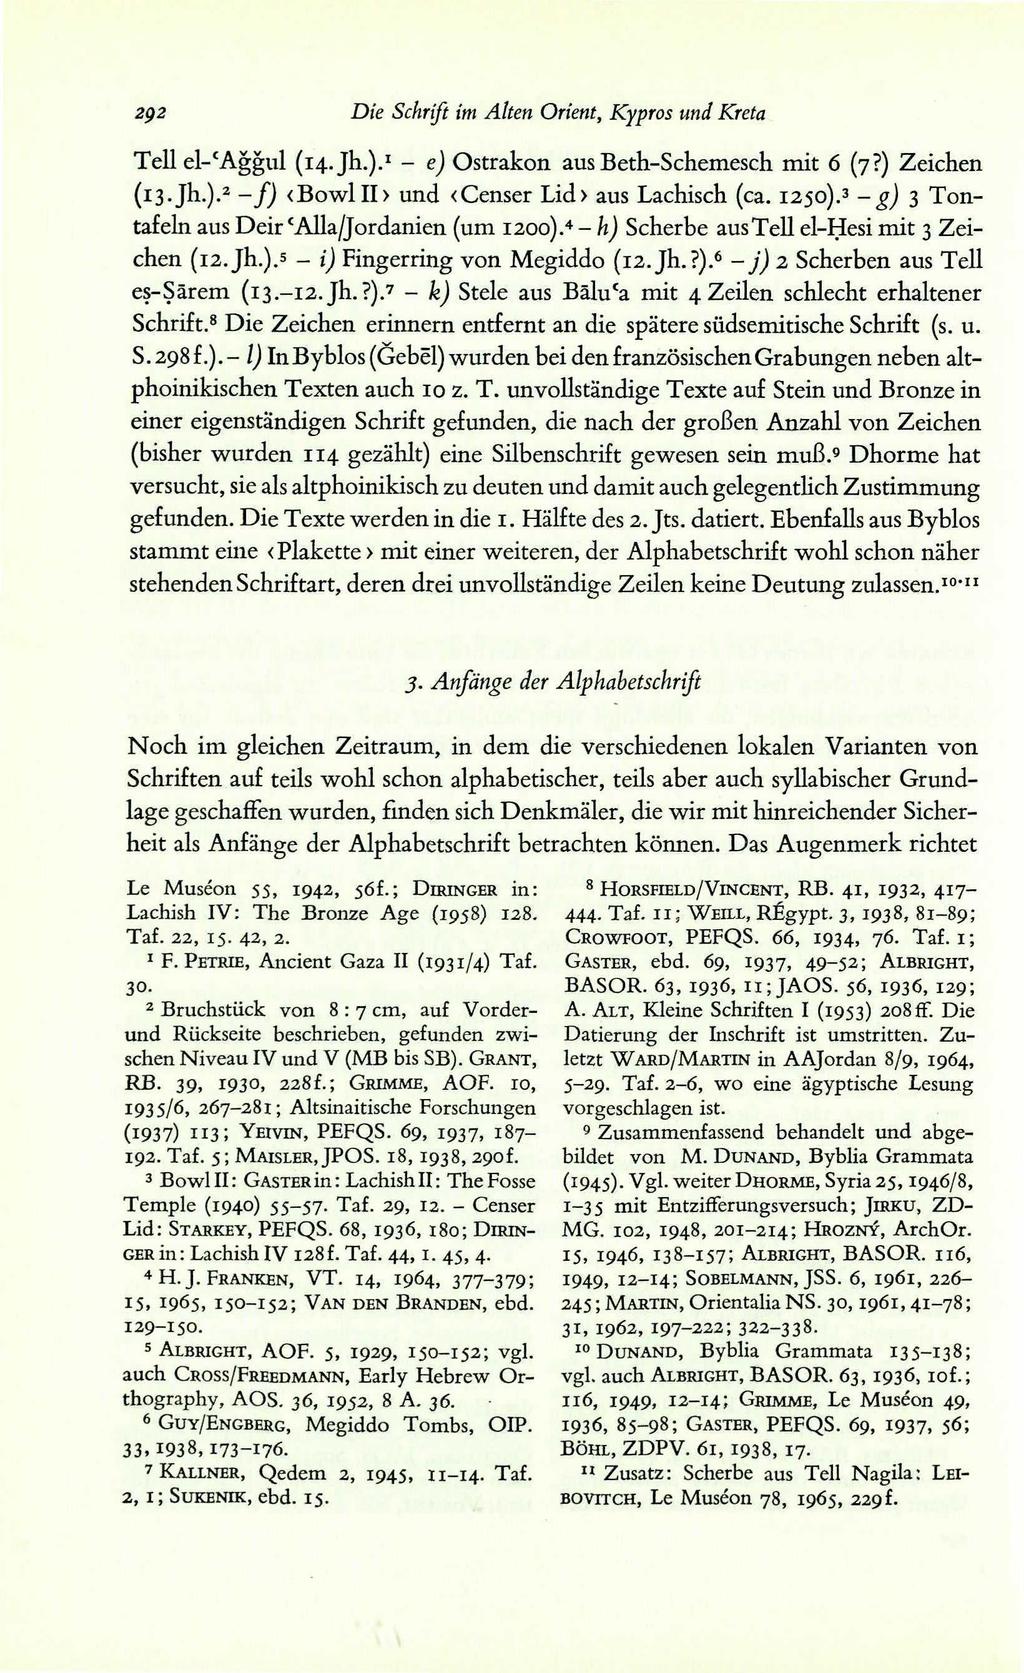 202 Die Schrift im Alten Orient, Kypros und Kreta Teil el-'aggul (14. Jh.). 1 - e) Ostrakon aus Beth-Schemesch mit 6 (7?) Zeichen (13. Jh.). 2 -f) <BowlII> und <Censer Lid> aus Lachisch (ca. 1250).